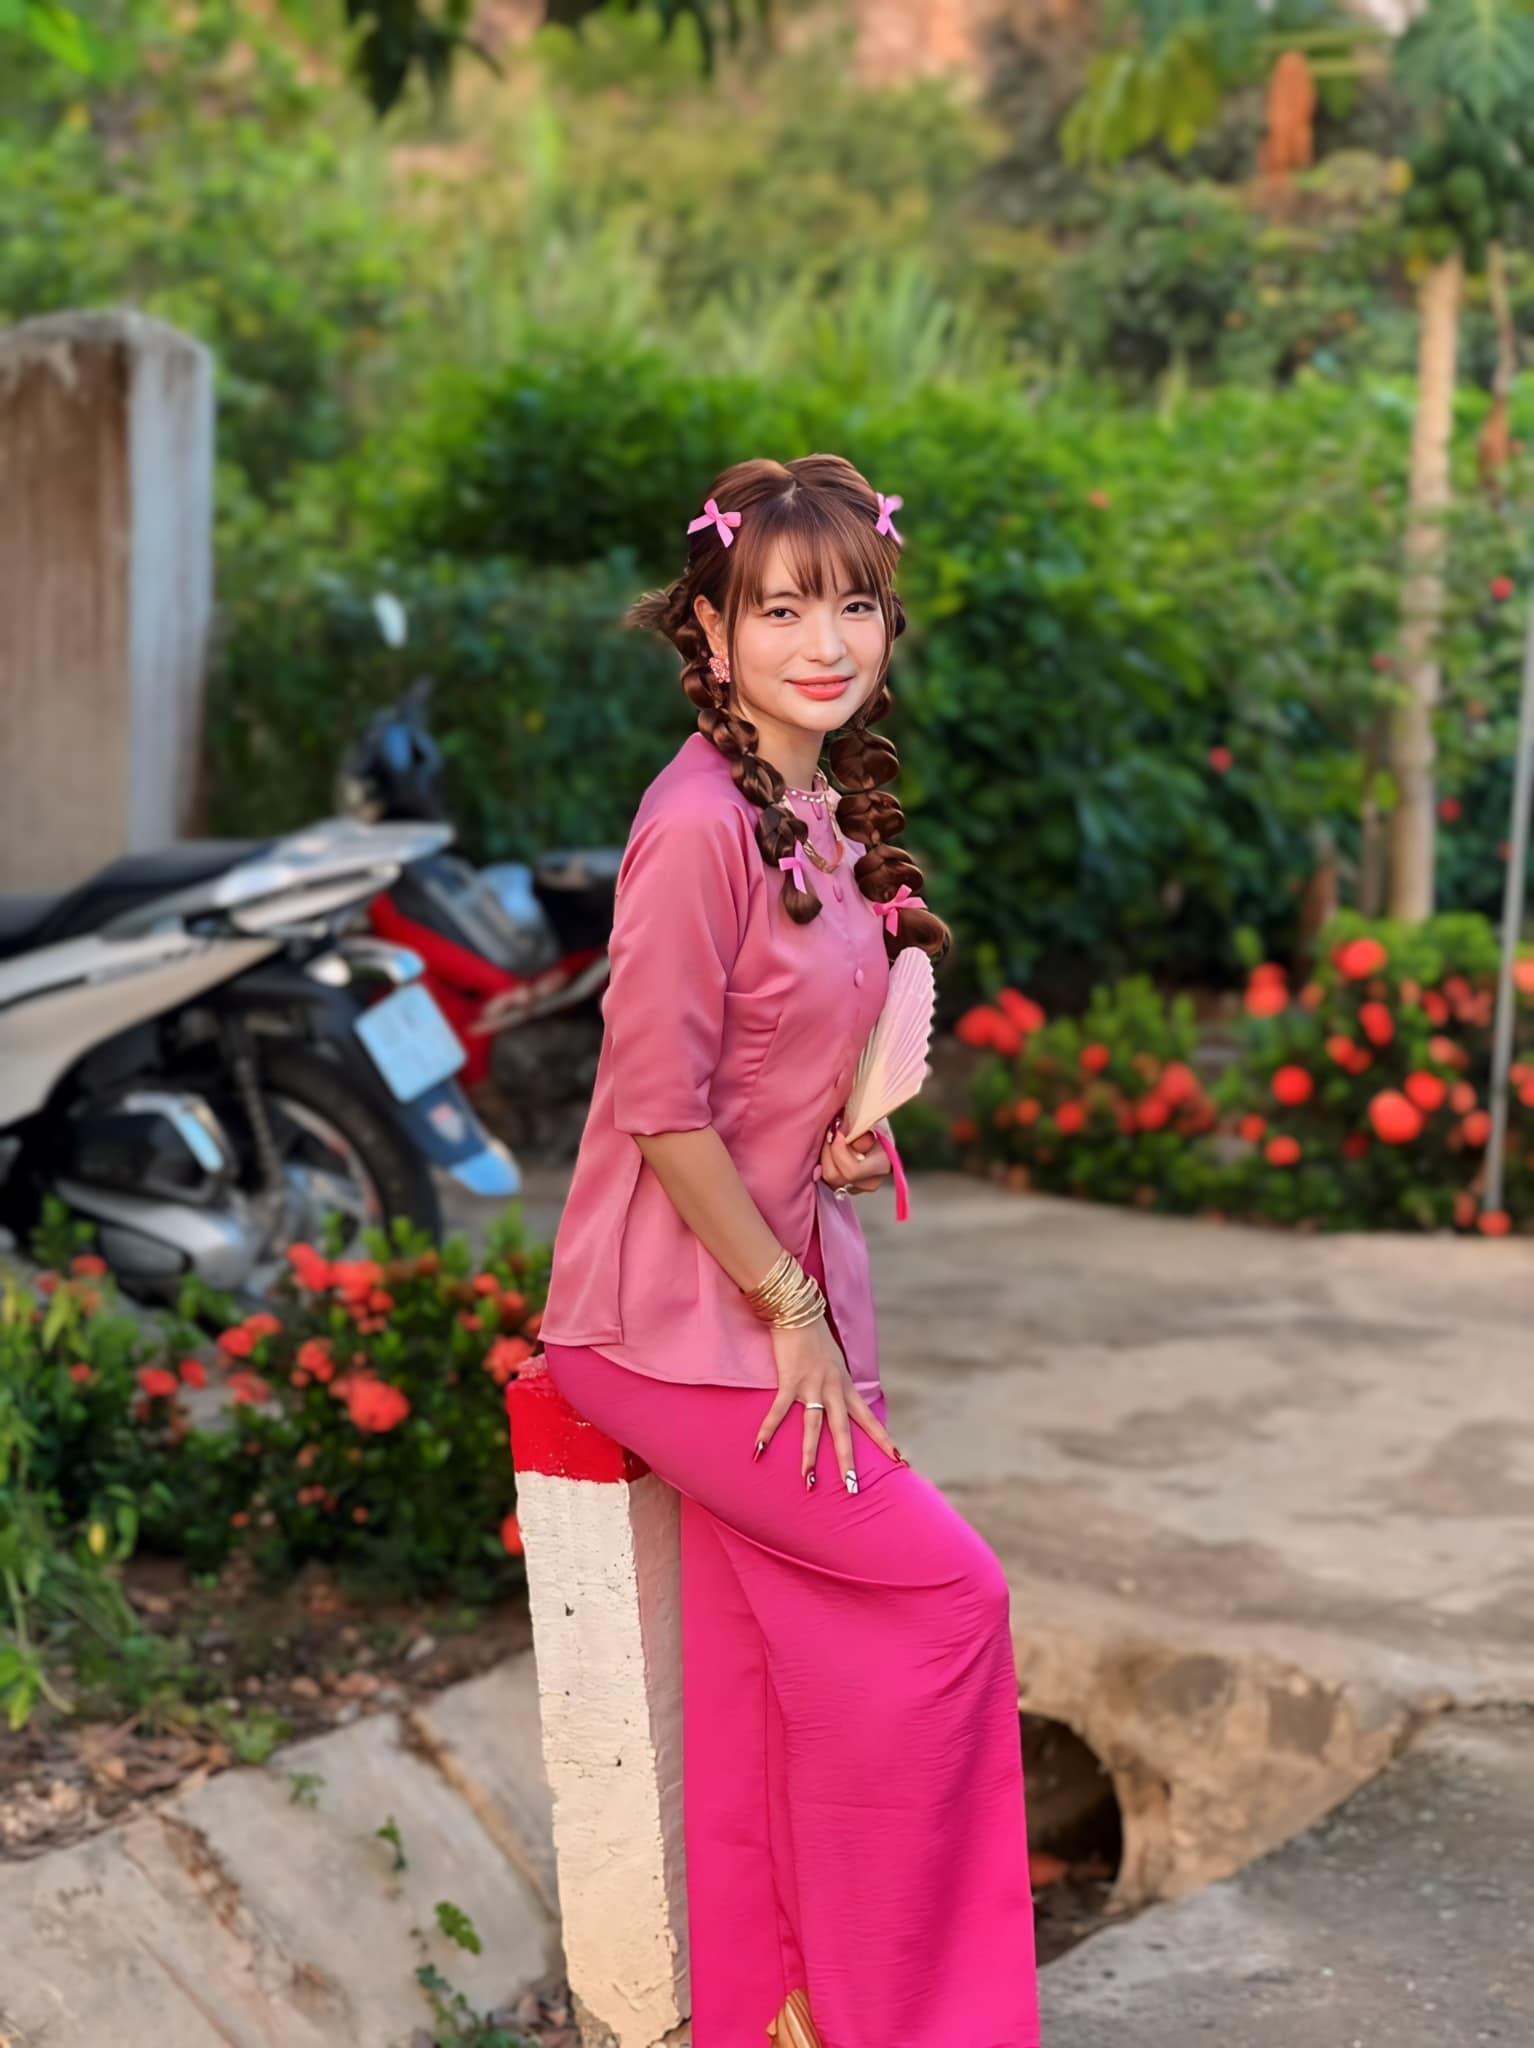 Bị so sánh với Hòa Minzy vì quẩy hết mình khi đi đám cưới, bà xã Mạc Văn Khoa có cách ứng xử cực khéo - ảnh 6